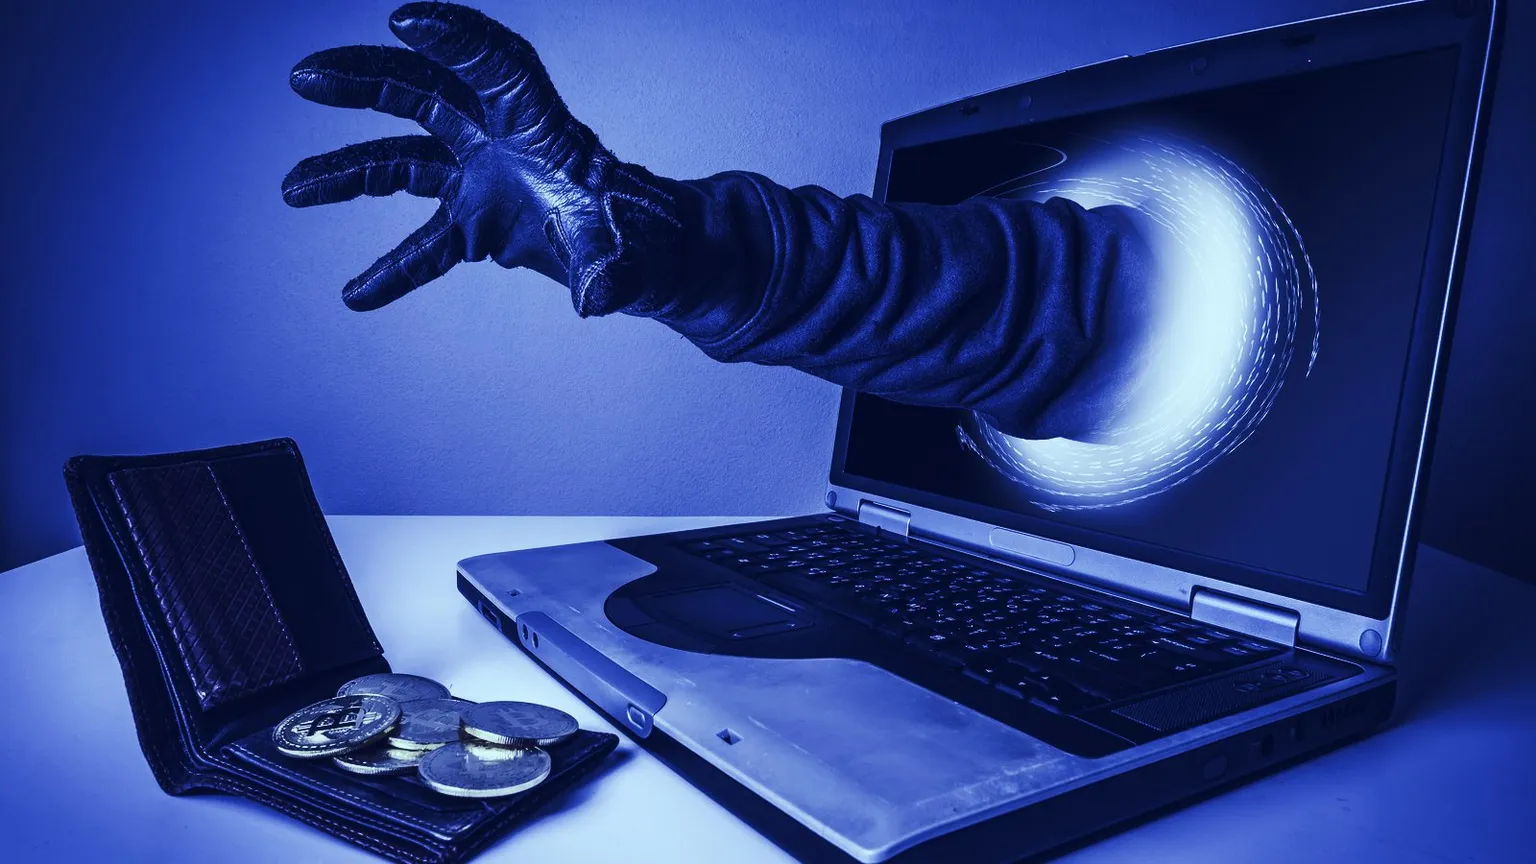 Los hackeos y los exploits son habituales en el mundo de las criptomonedas. Imagen: Shutterstock